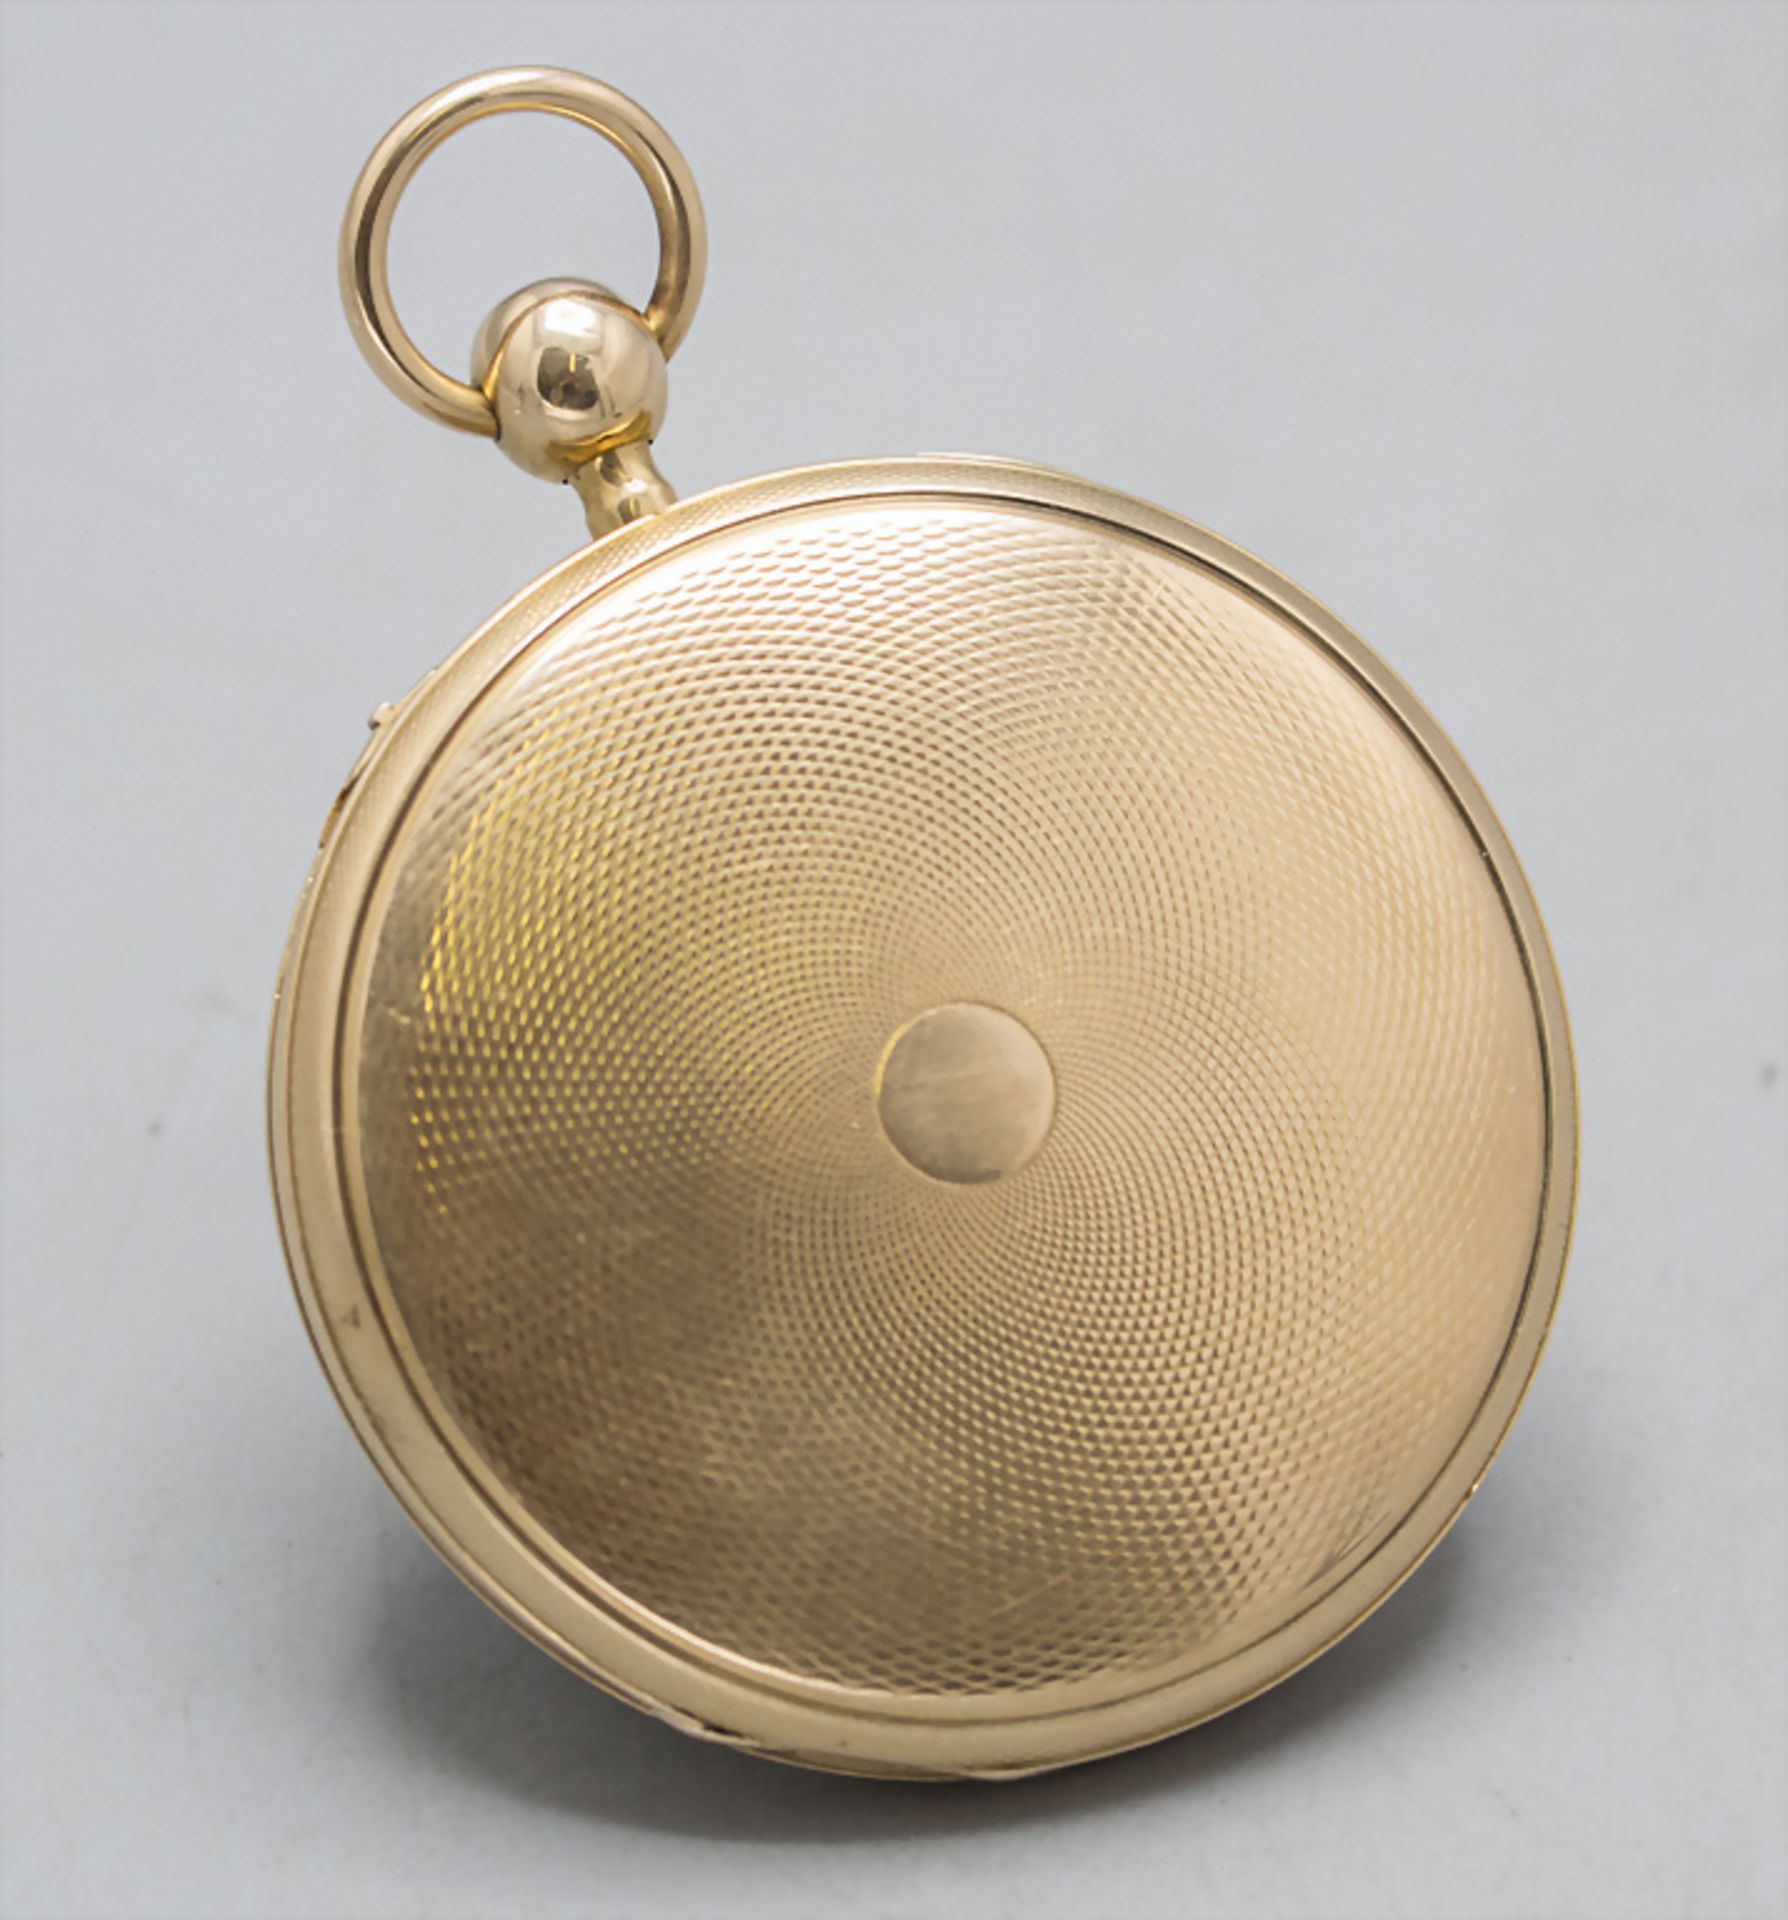 Offene Herrentaschenuhr ¼ Std.-Repetition / An 18 ct gold pocket watch, Schweiz/Swiss, um 1820 - Bild 8 aus 8